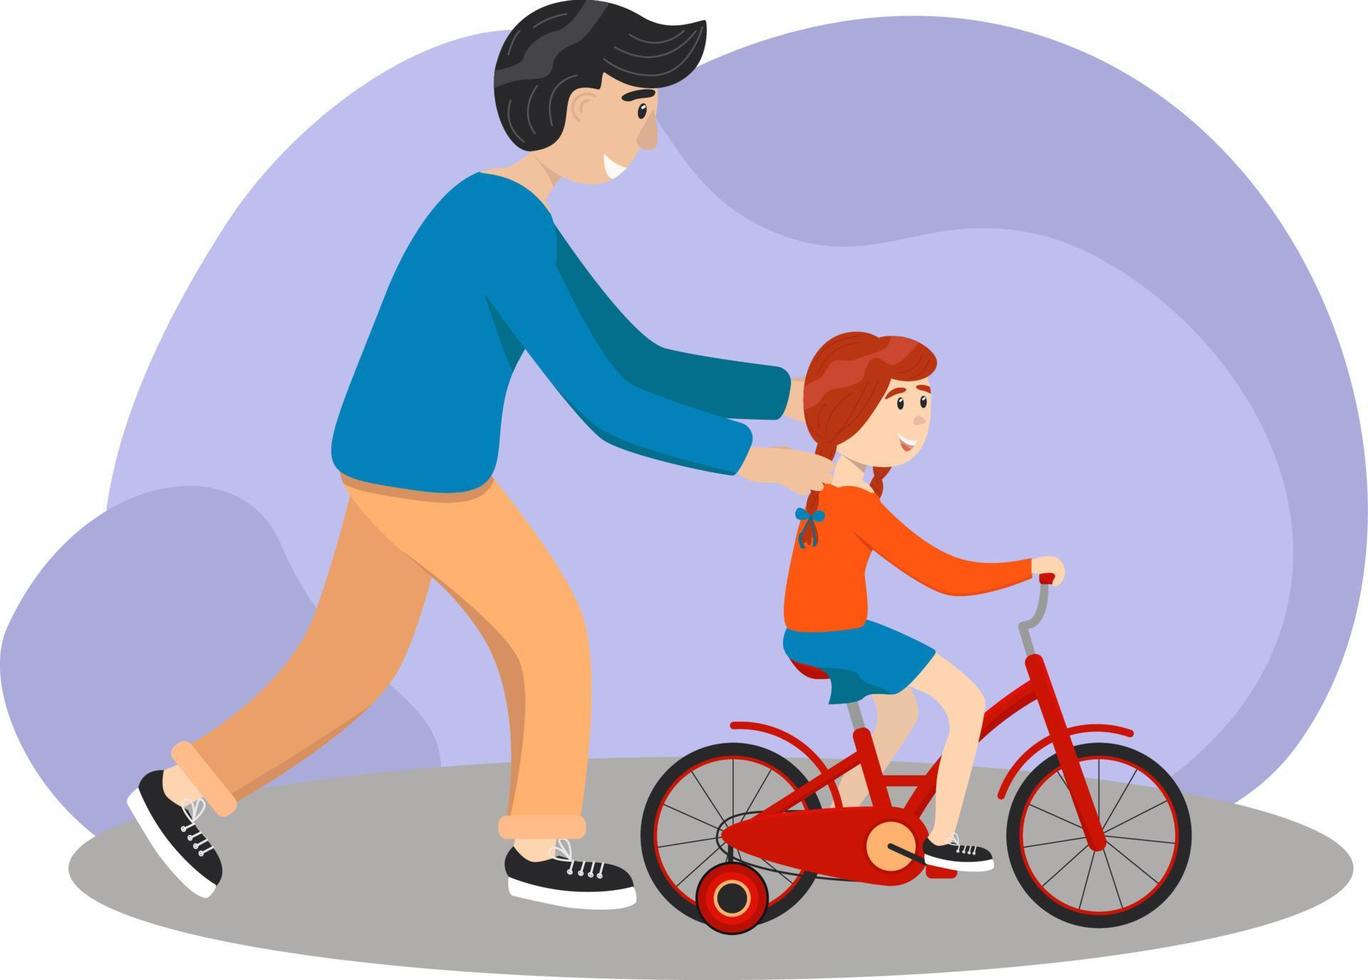 le père apprend à sa fille à faire du vélo. enfant apprend à faire du vélo. notion parentale. le père aide sa petite fille à apprendre à faire du vélo à la campagne ensemble. illustration vectorielle stock, eps 10. vecteur